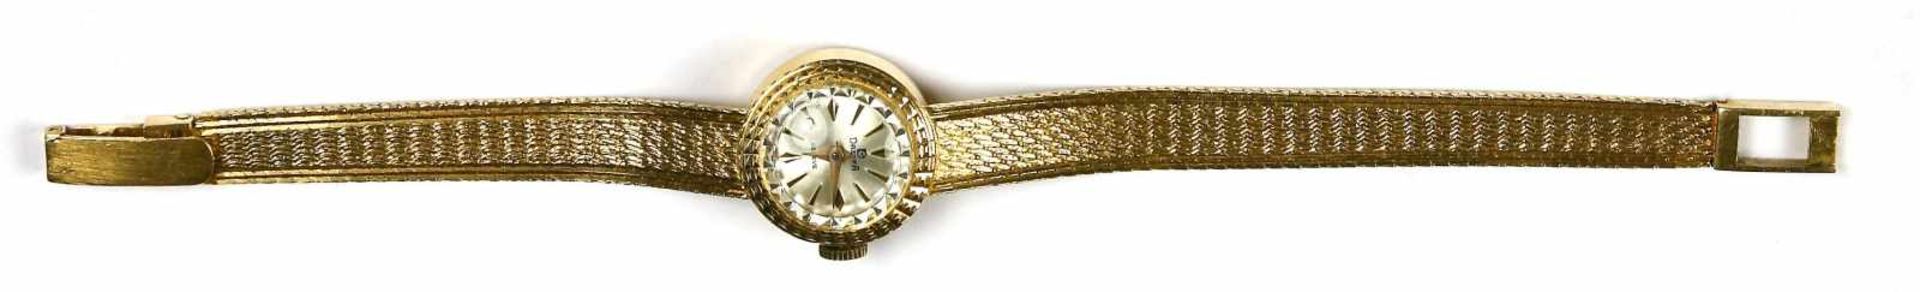 Uhr, Damenuhr, 750er GG., DreffaUhrengehäuse mit Ansatzband. Gehend. Bruttogewicht 18,5 g.